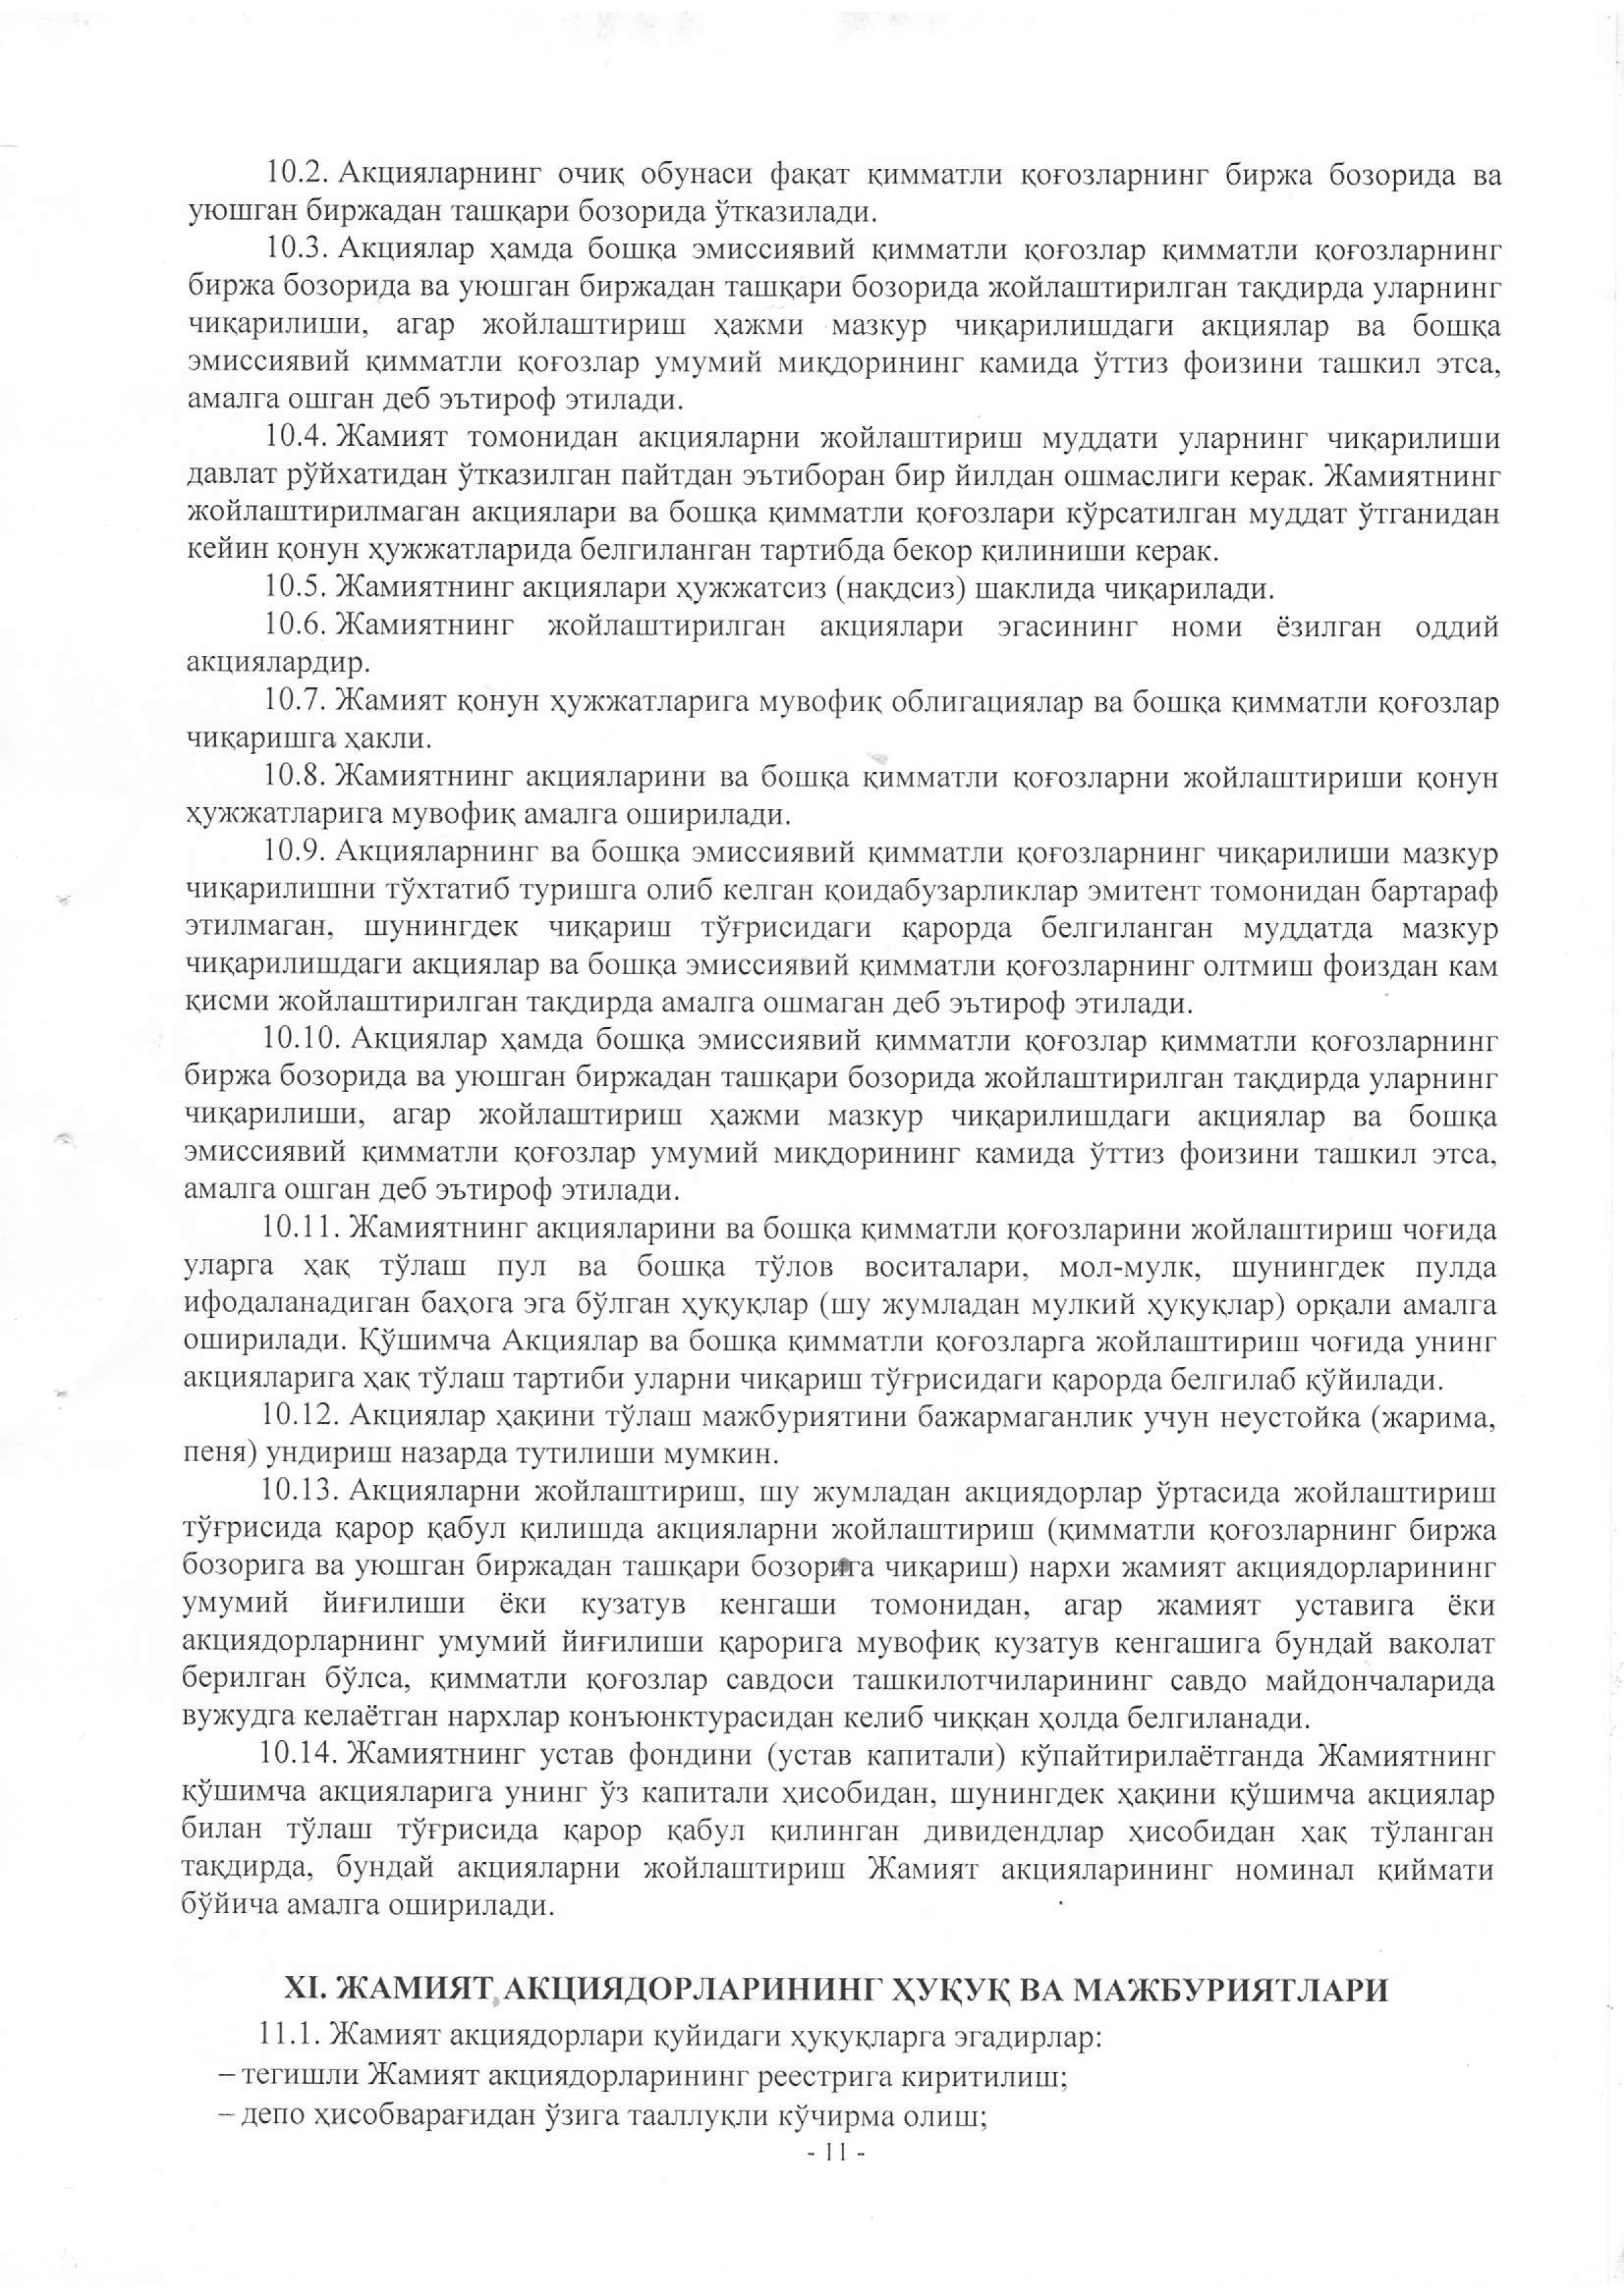 устав 2019 жахон бозори-11